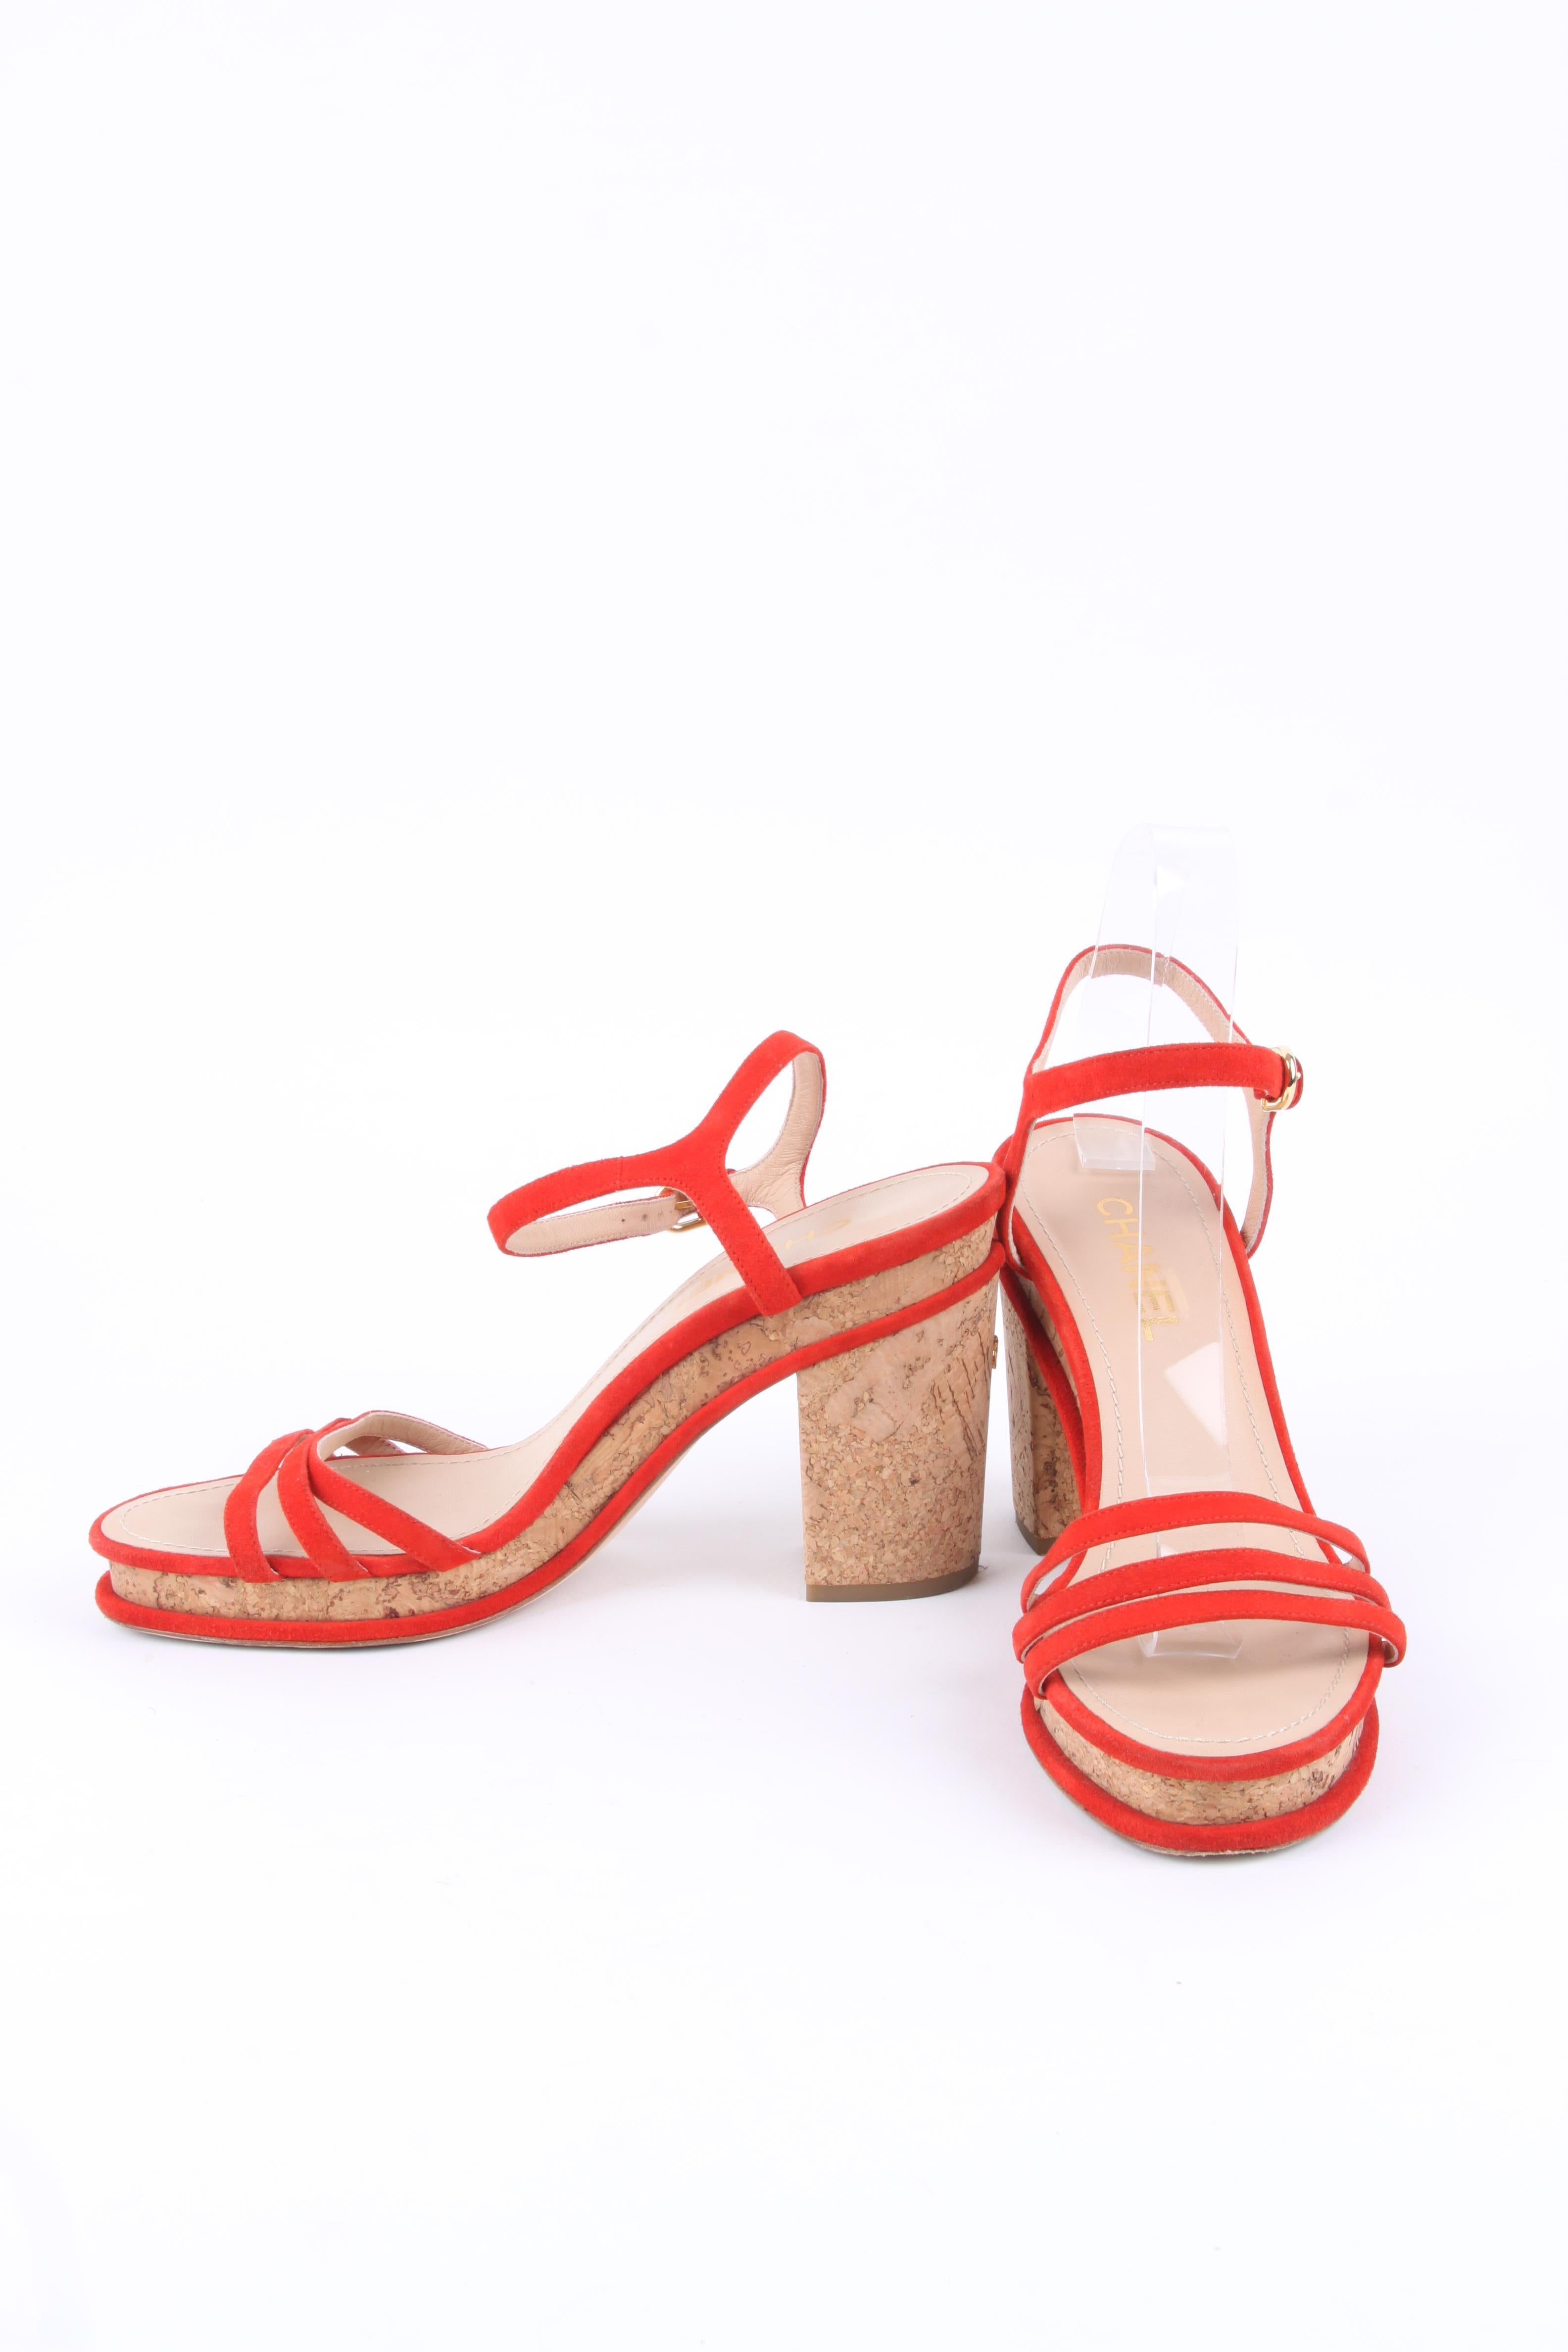 Beige Chanel Cork Sandals - red